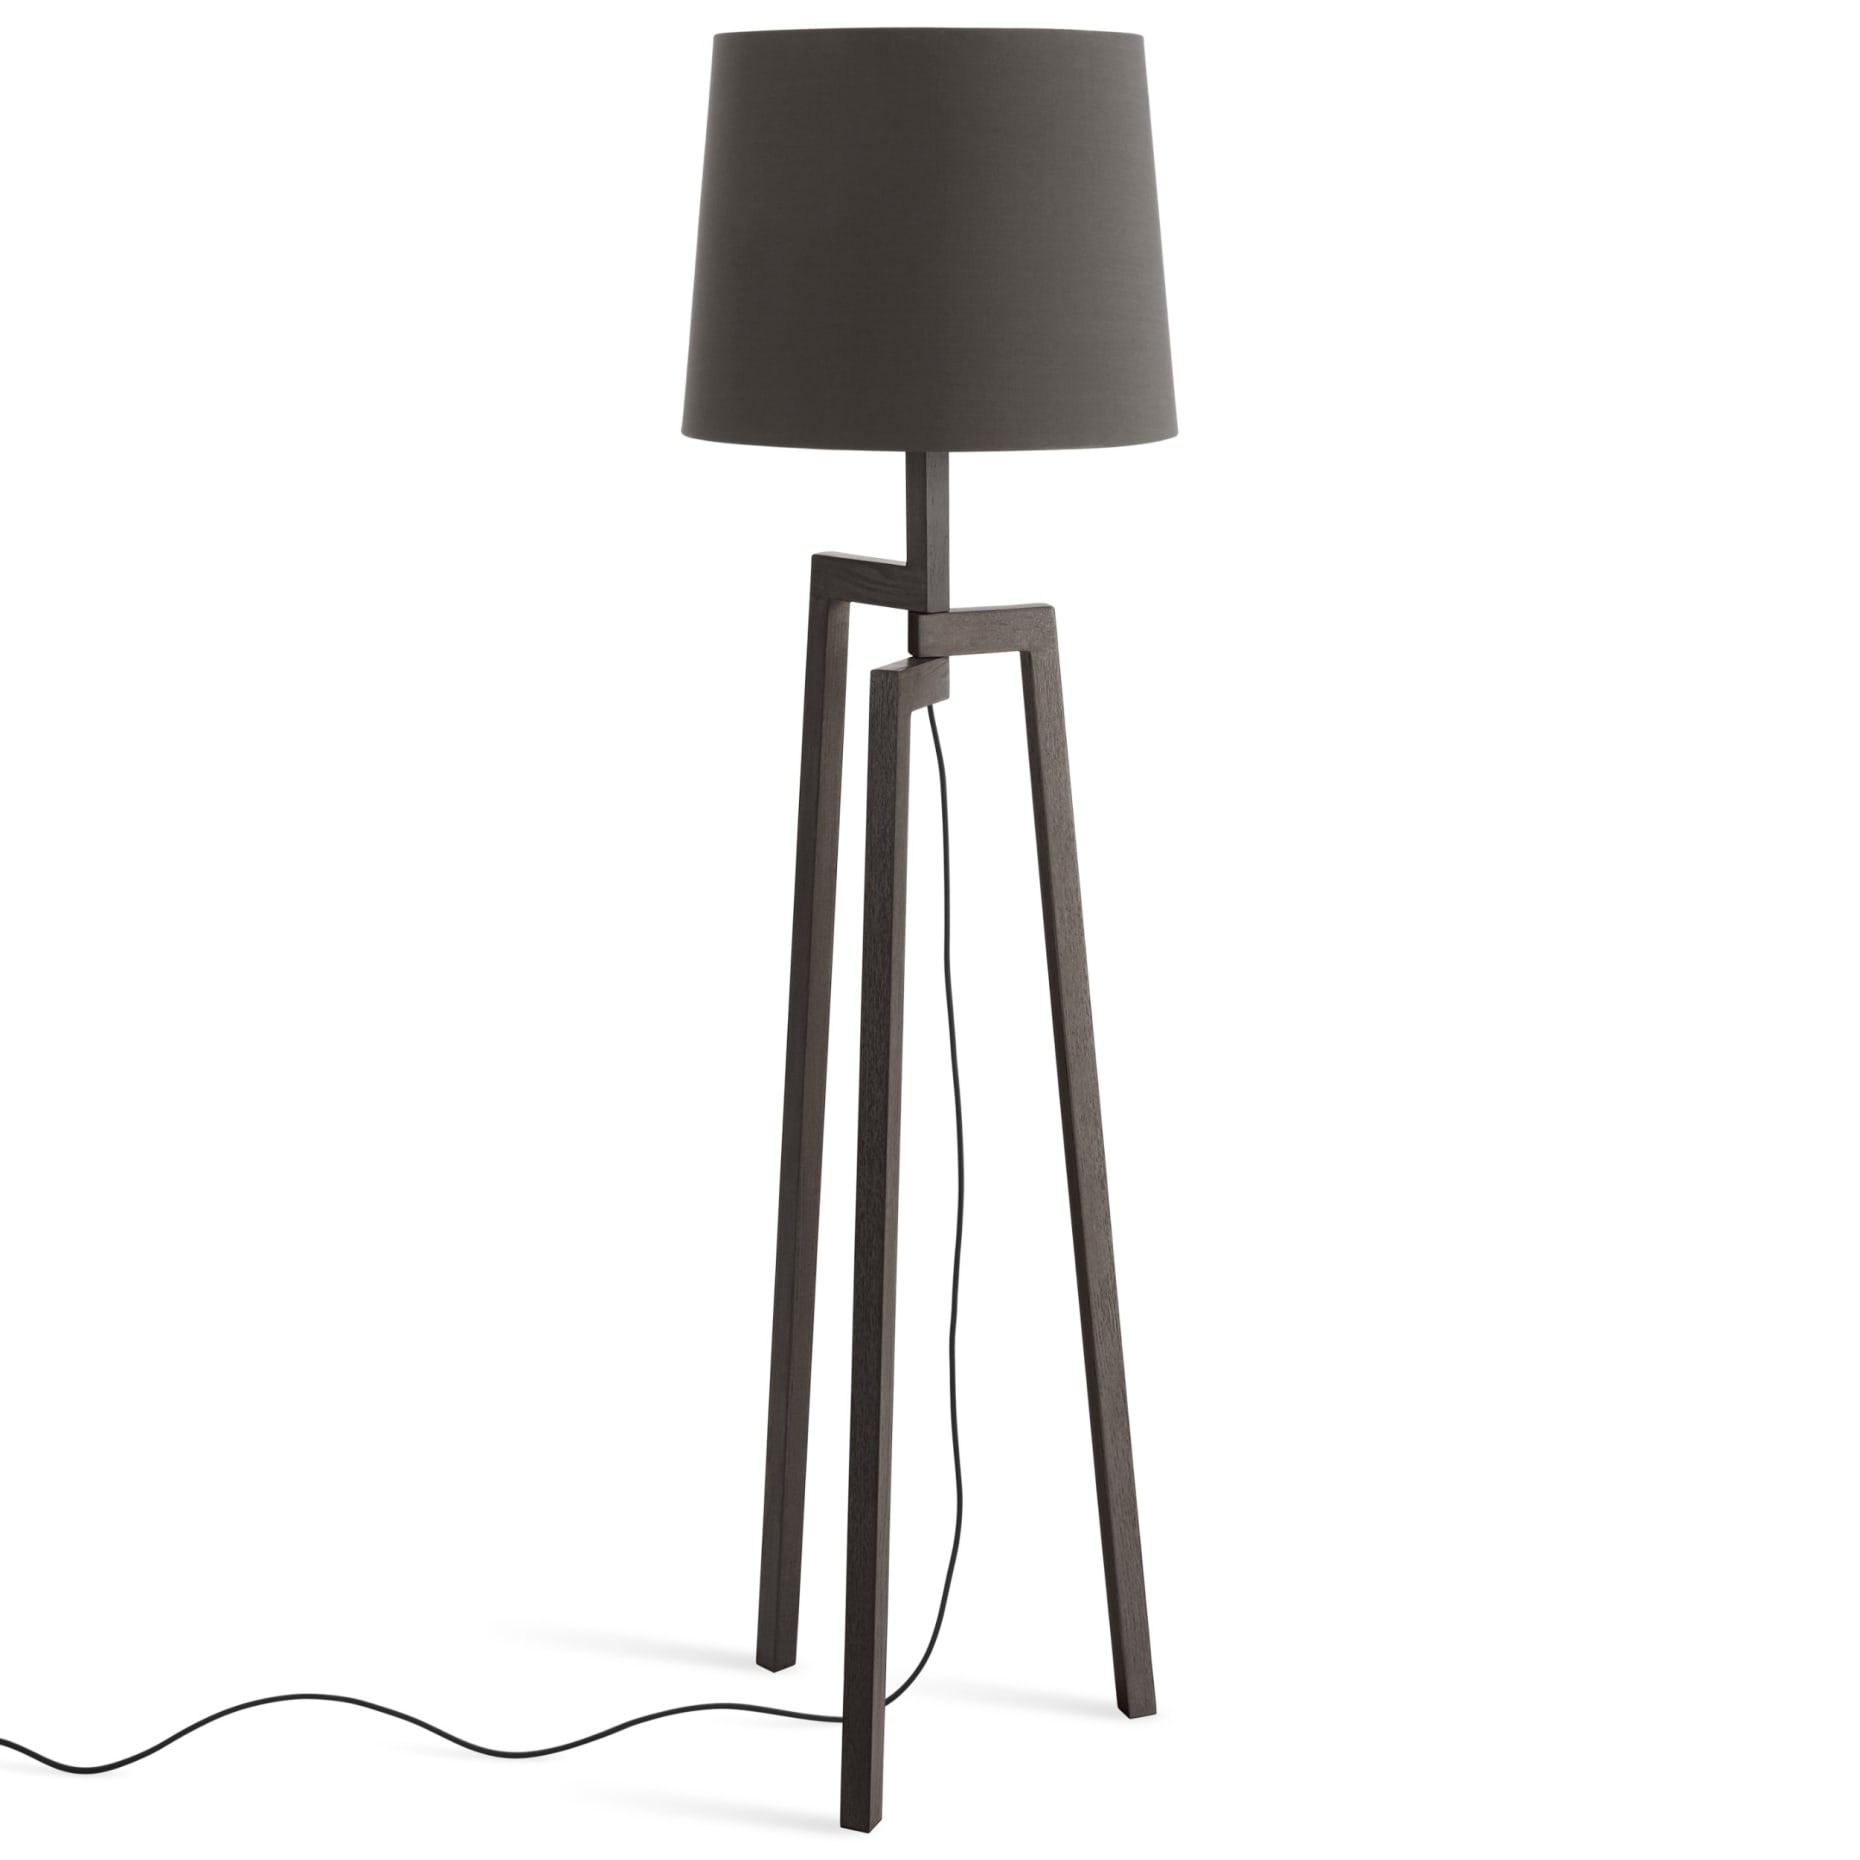 Stilt Floor Lamp intended for size 1860 X 1860